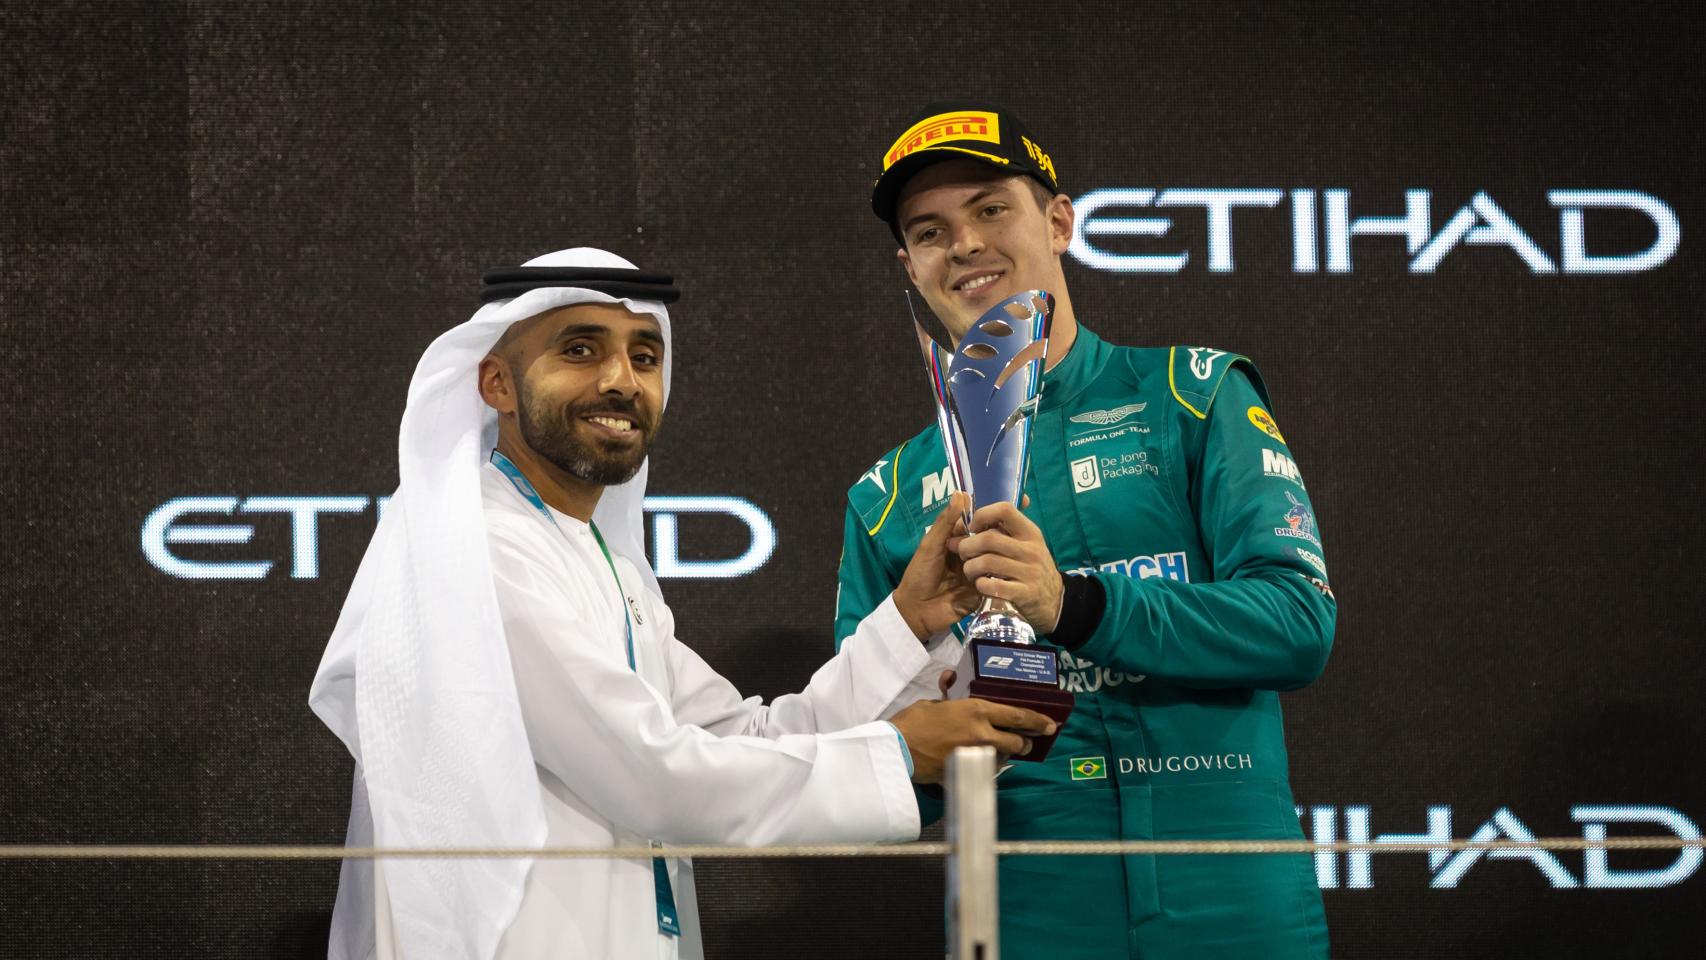 Felipe Drugovich celebrando un triunfo en el circuito de Yas Marina en Abu Dhabi